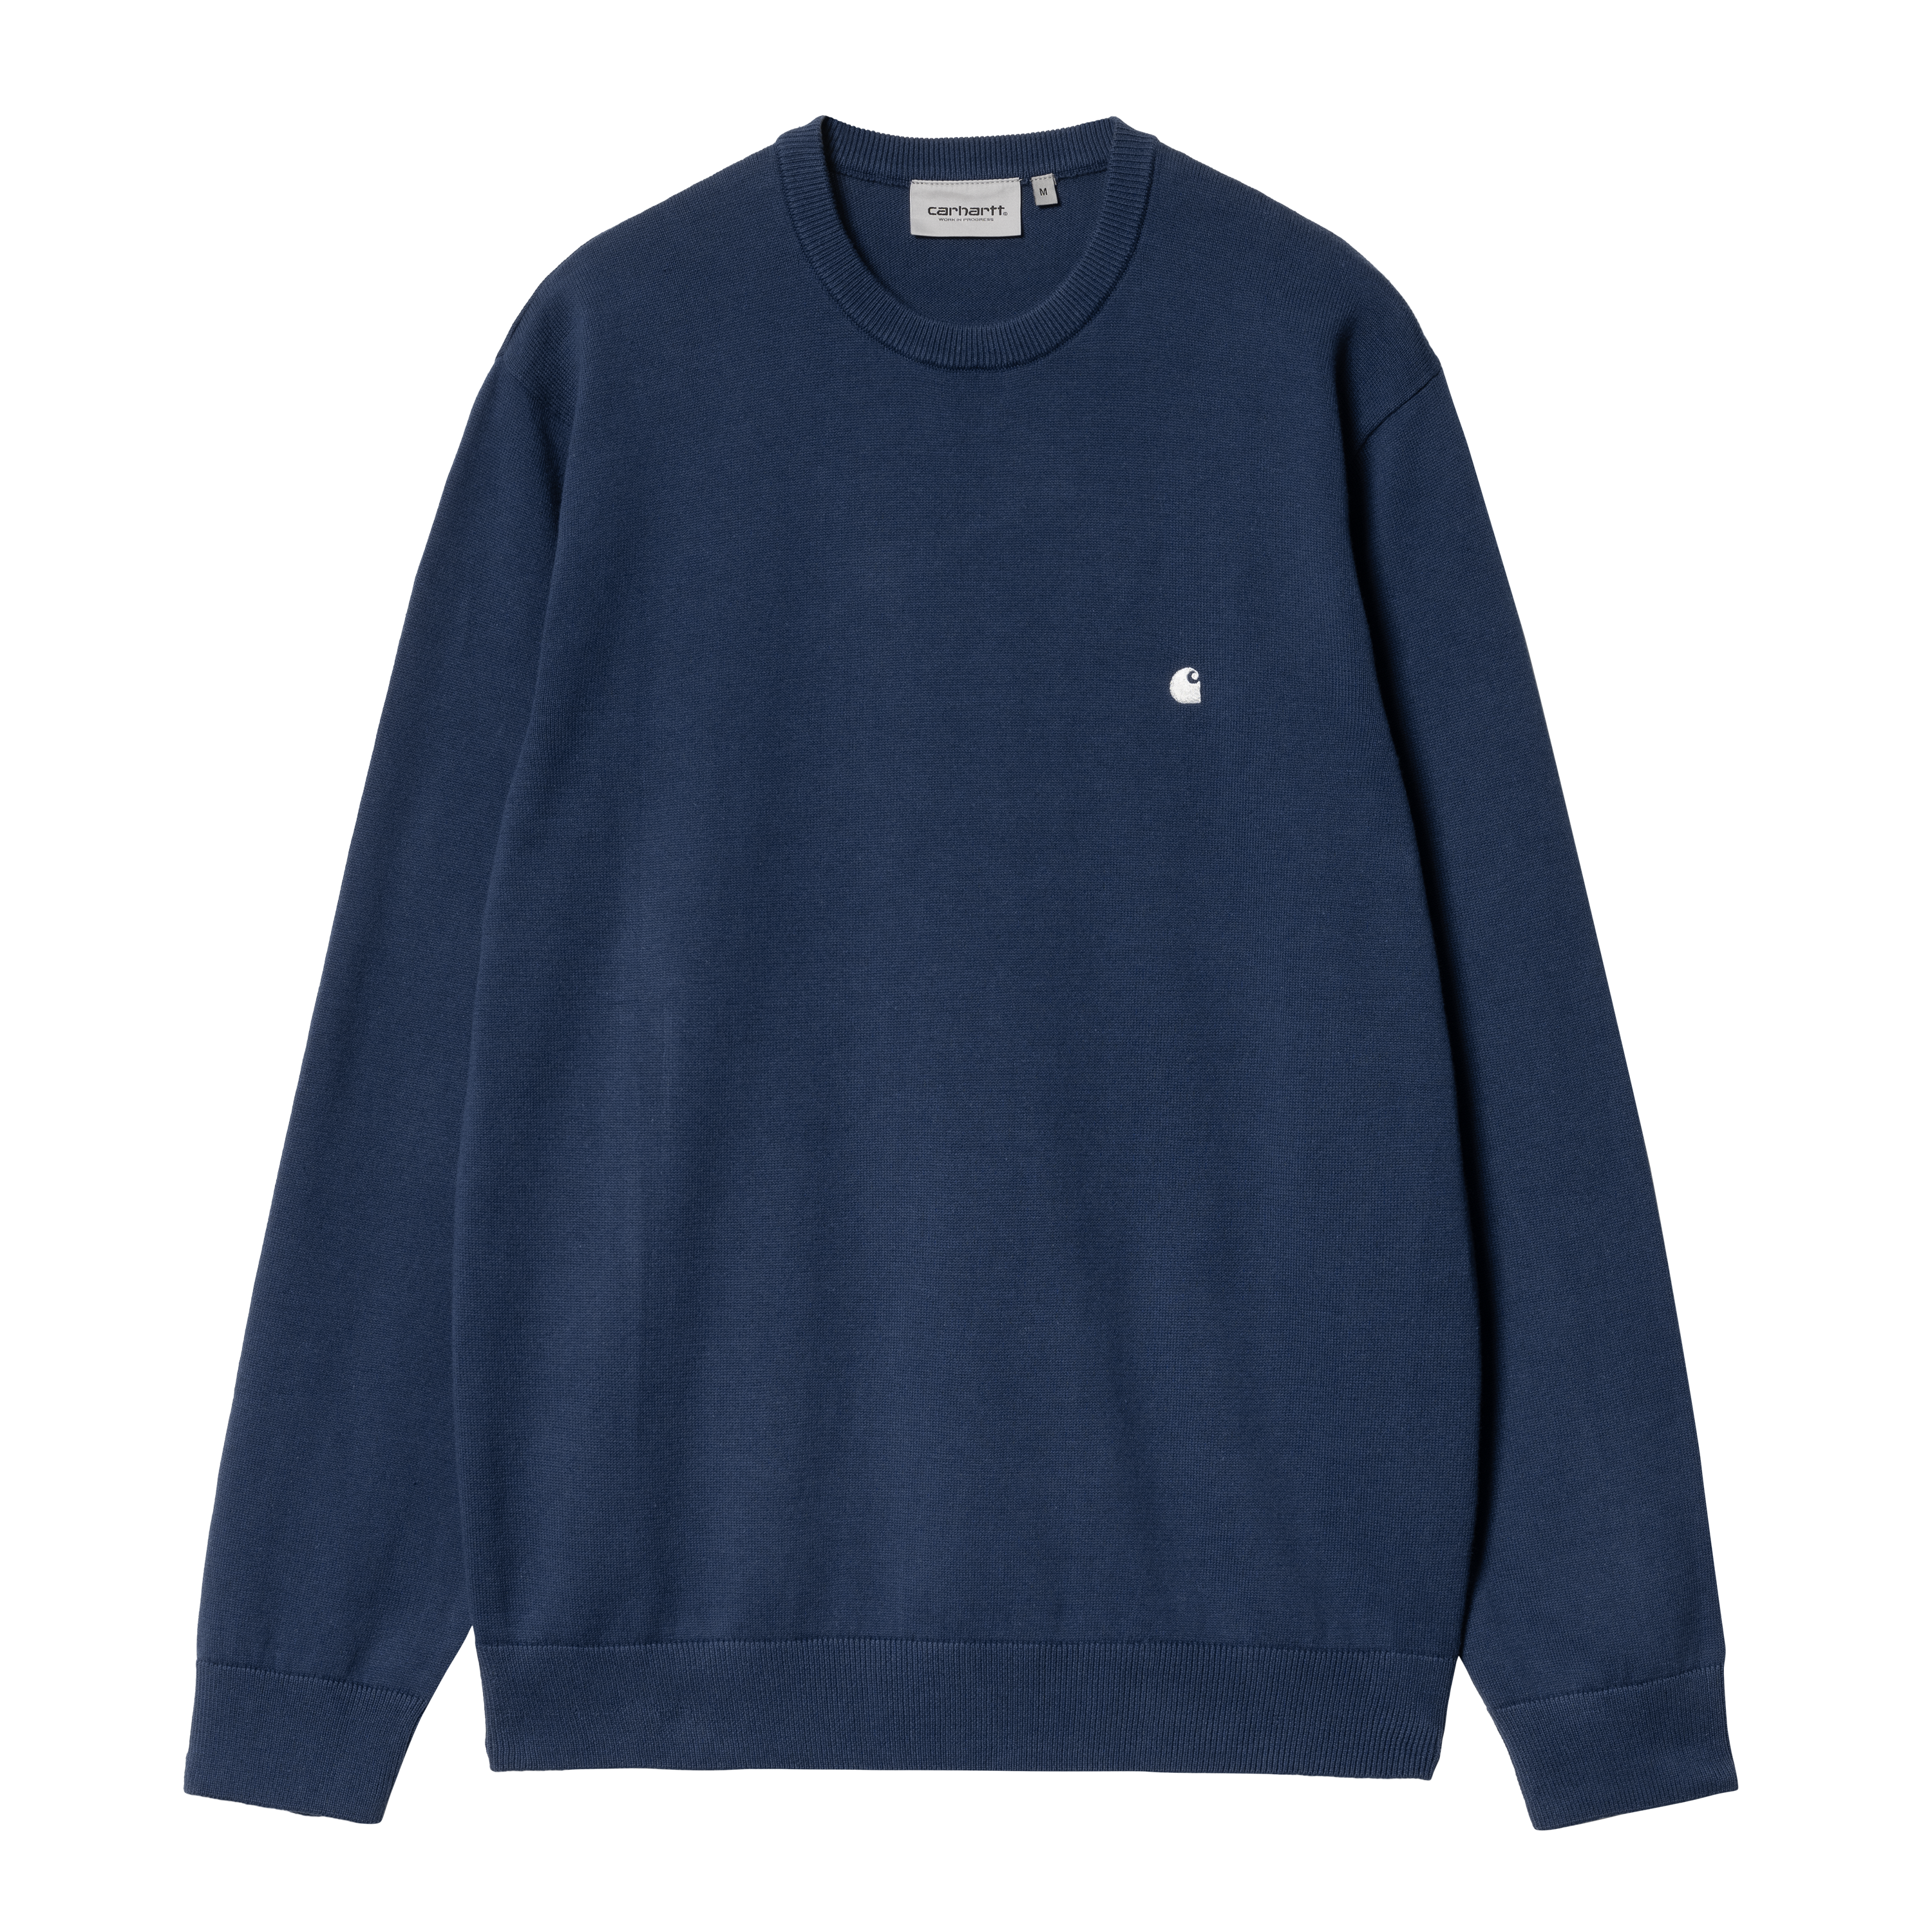 Carhartt WIP Madison Sweater in Blau